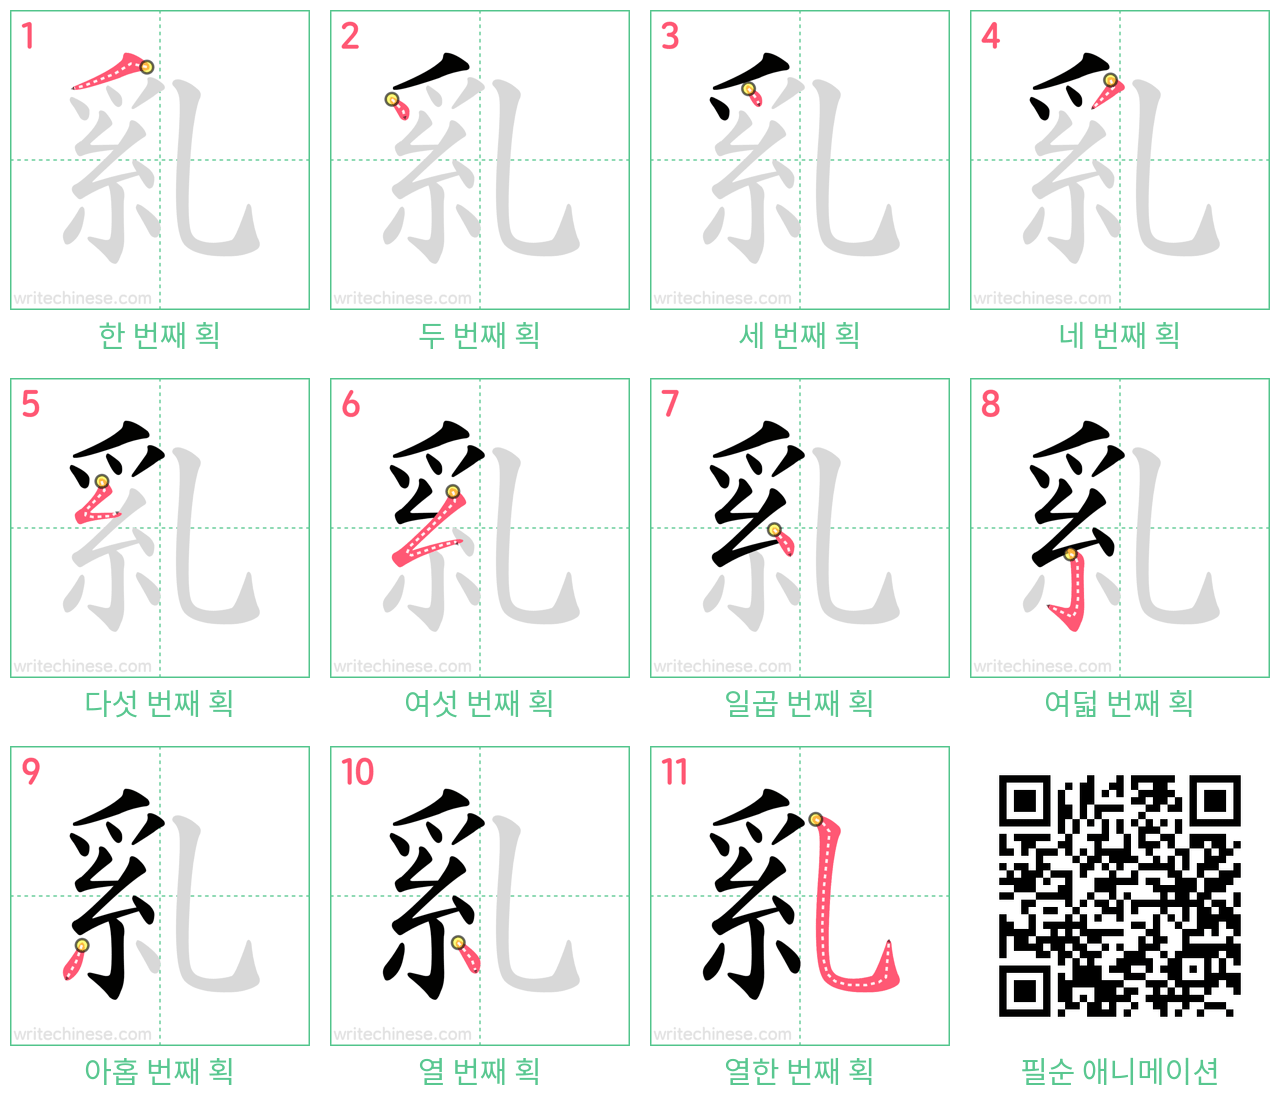 乿 step-by-step stroke order diagrams